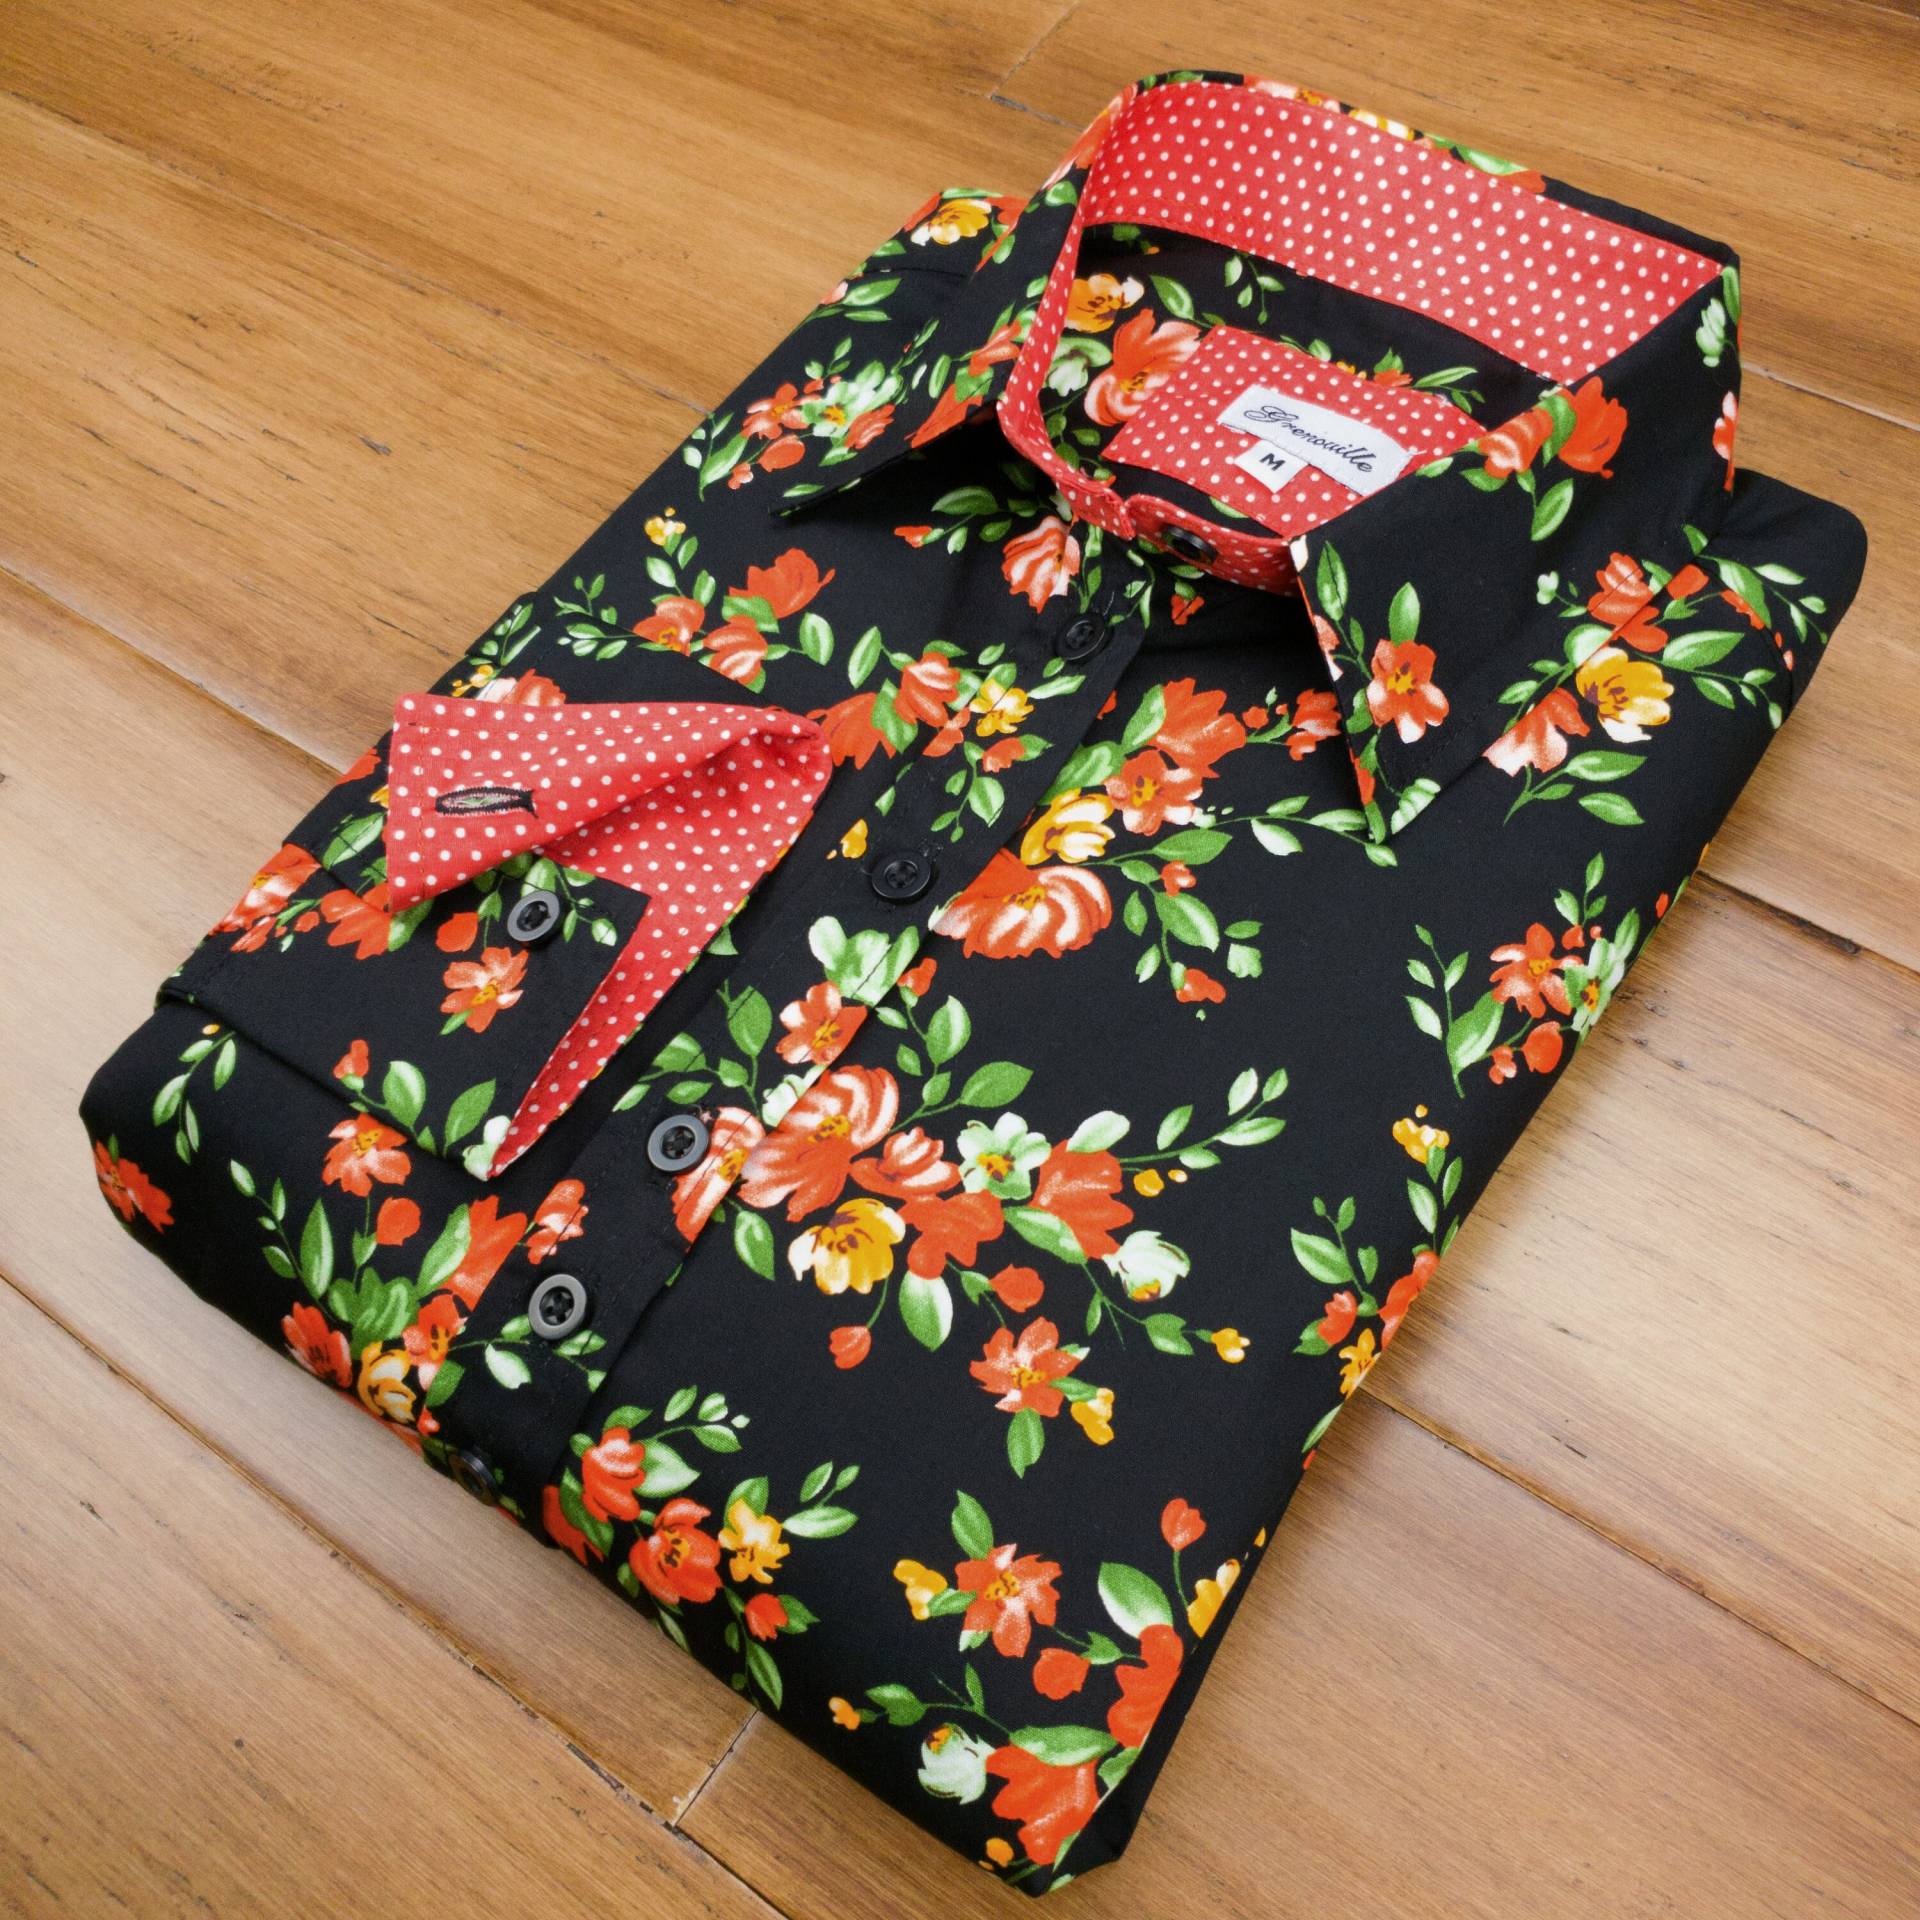 Grenouille Damen Langarm Bluse Schwarz Mit Rot Und Gelbem Blumen Motiv | Signature Shirts Muttertag/Geburtstagsgeschenk von SalamanderShirts